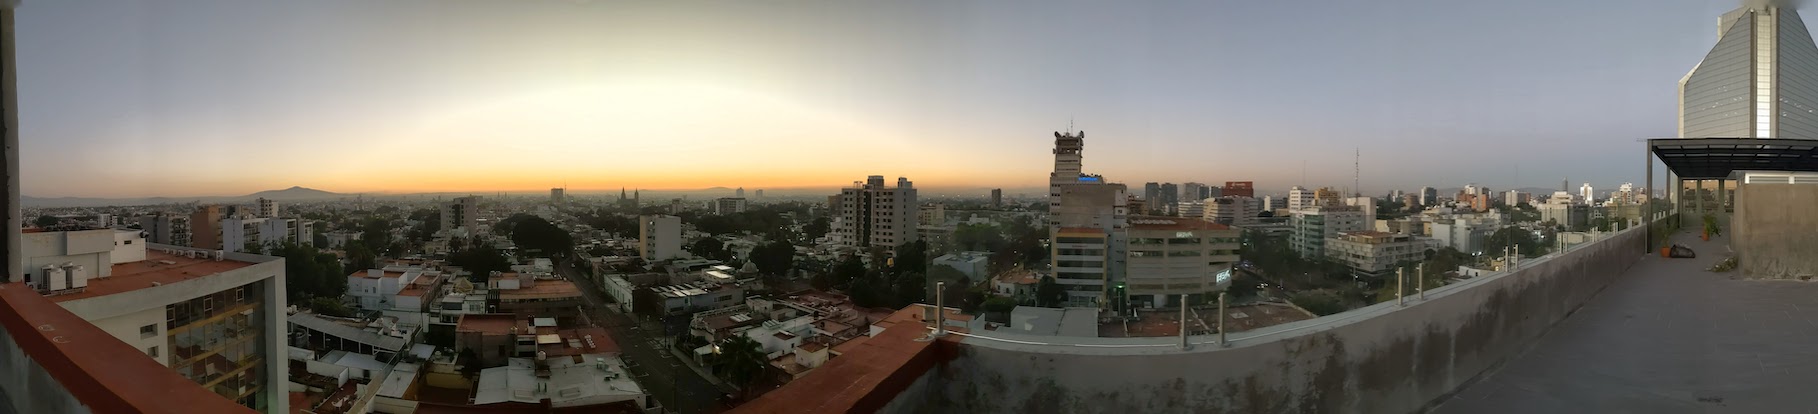 Selina Guadalajara - Rooftop